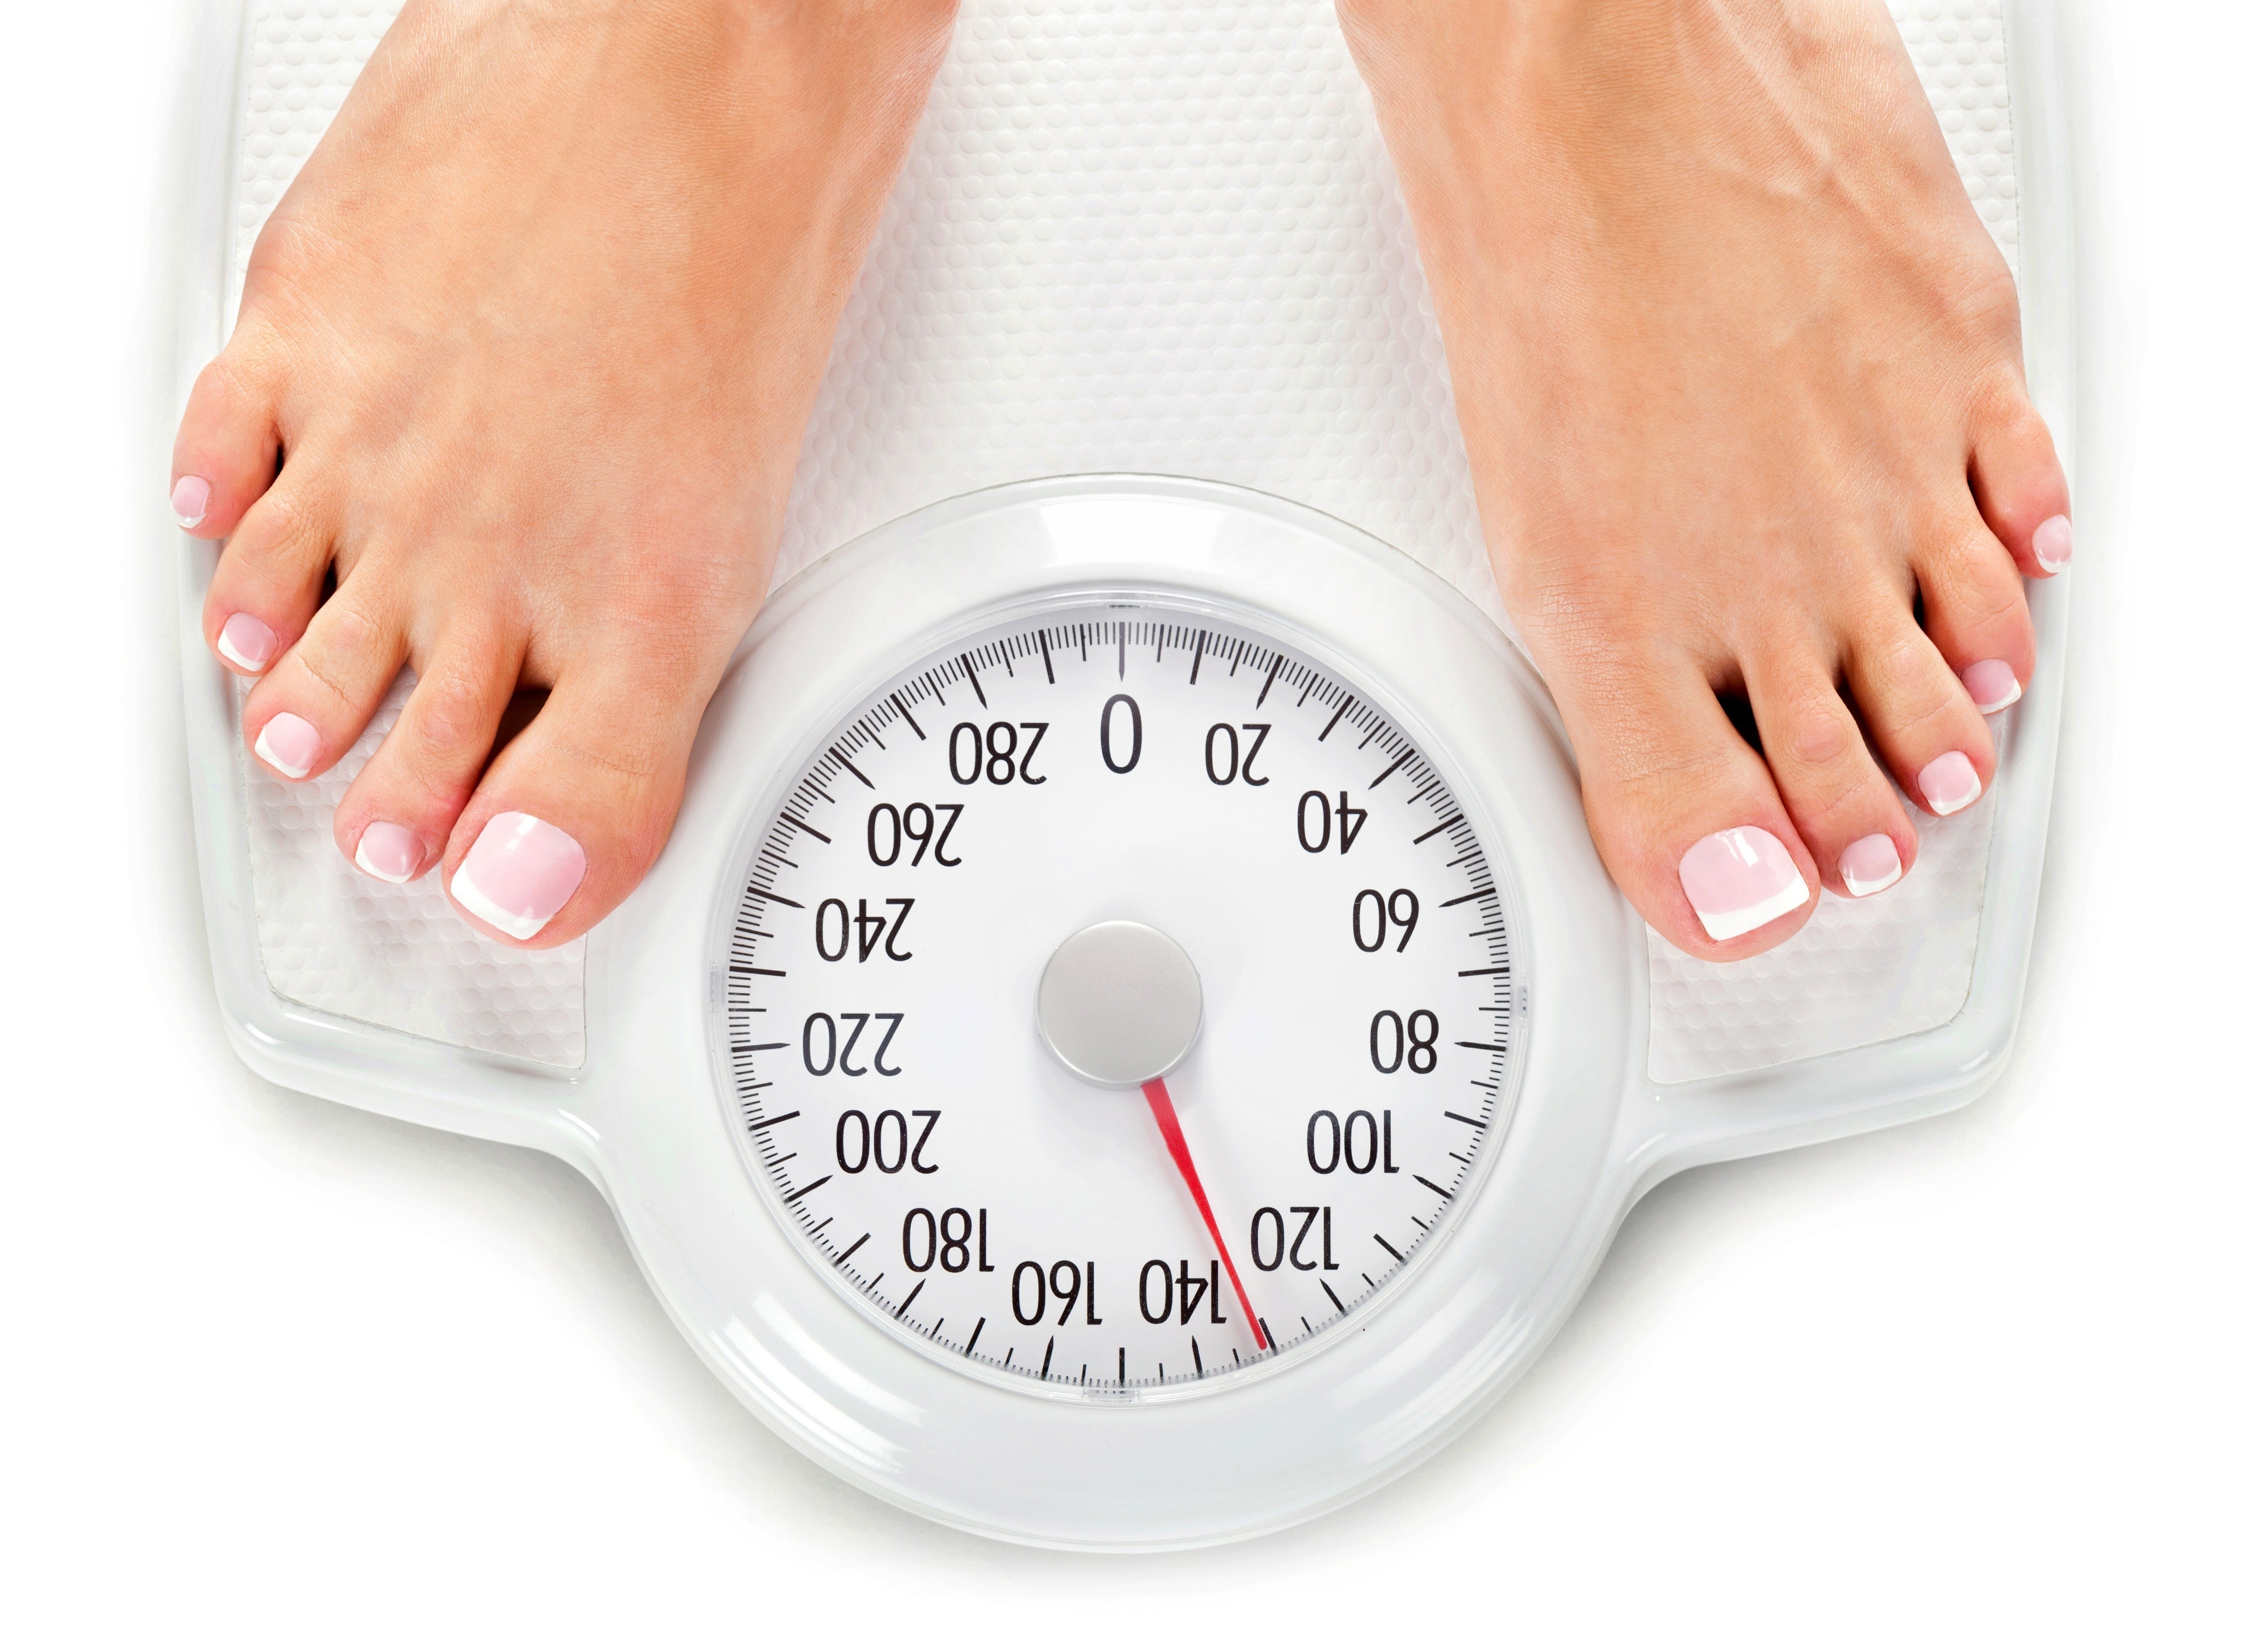 Бесплатного лишний вес. Нормализация массы тела. Лишний вес весы. Контроль веса. Следить за весом.